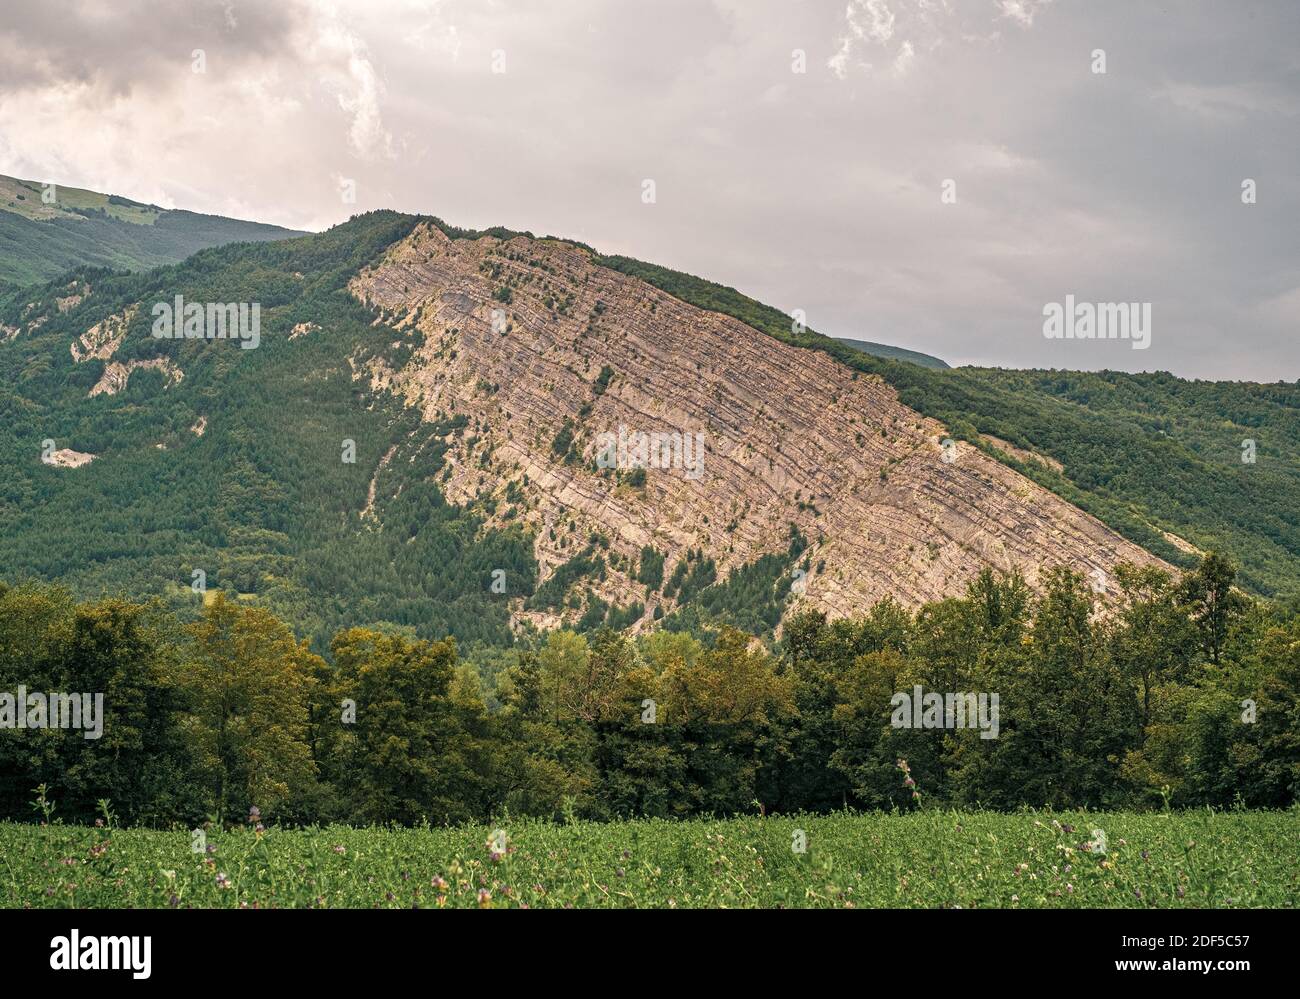 Guasto geologico nel paesaggio boschivo, affioramento roccioso con strati di terreno visibili. Provincia di Modena, Emilia e Romagna, Italia. Foto Stock